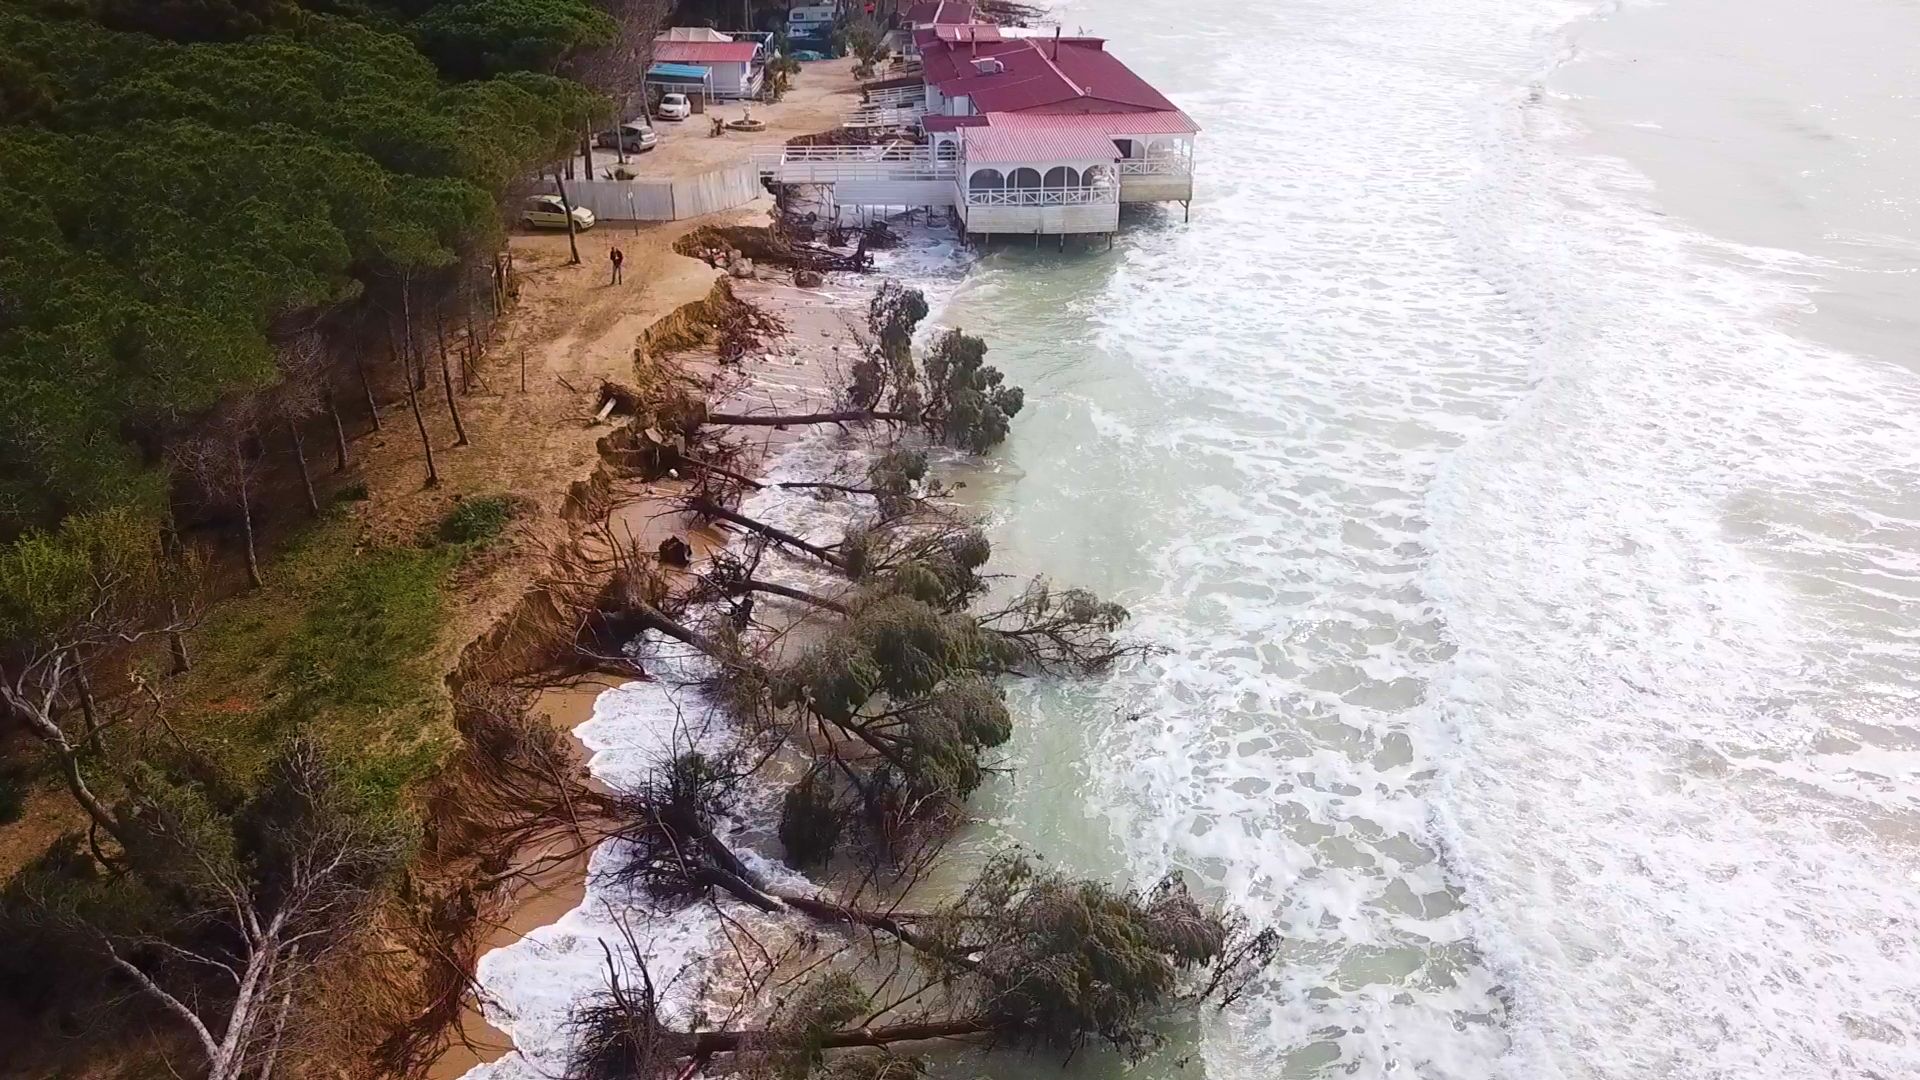 La plage d’Eraclea Minoa pendant la tempête en hiver qui a fait tomber les arbres de la pinède.